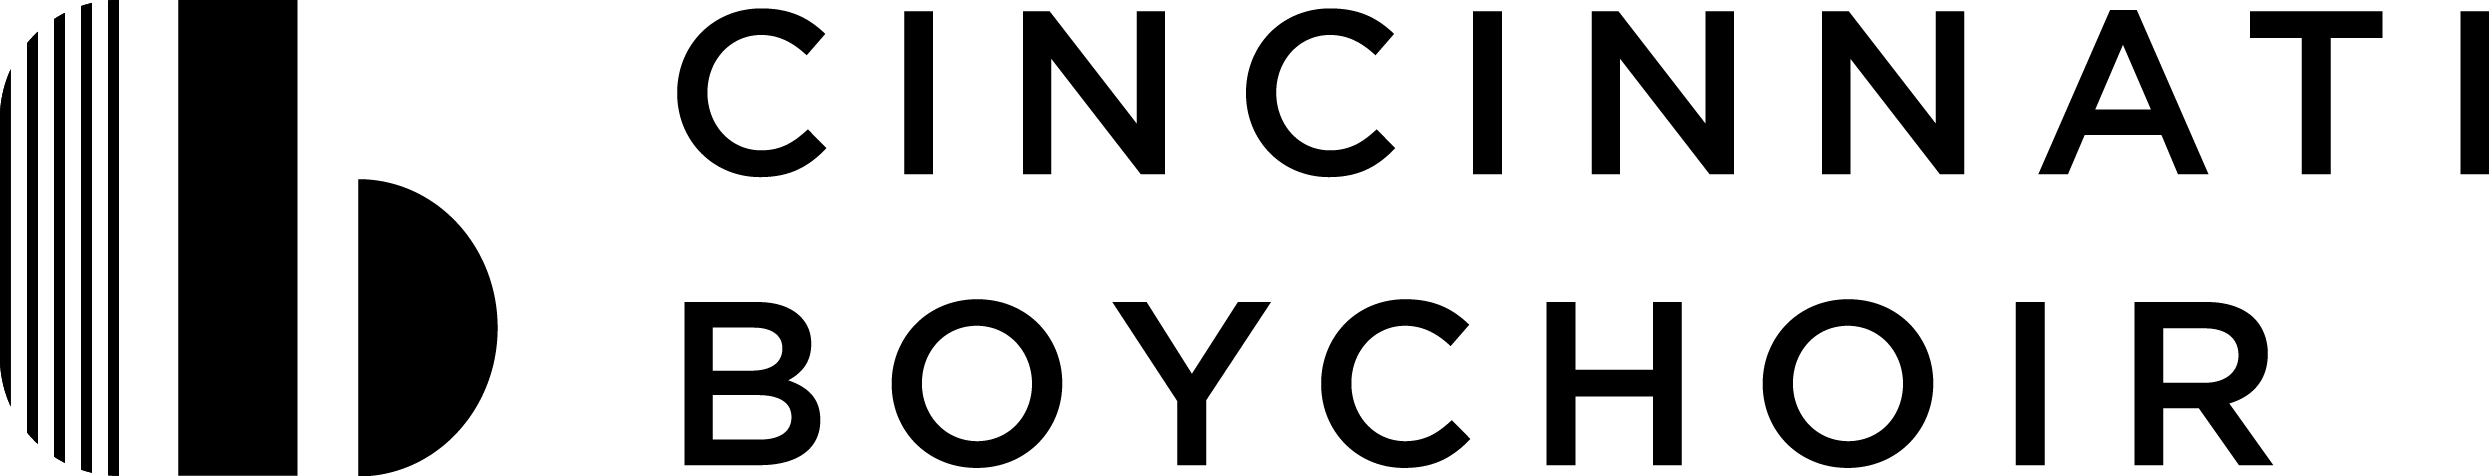 Cincinnati Boychoir logo